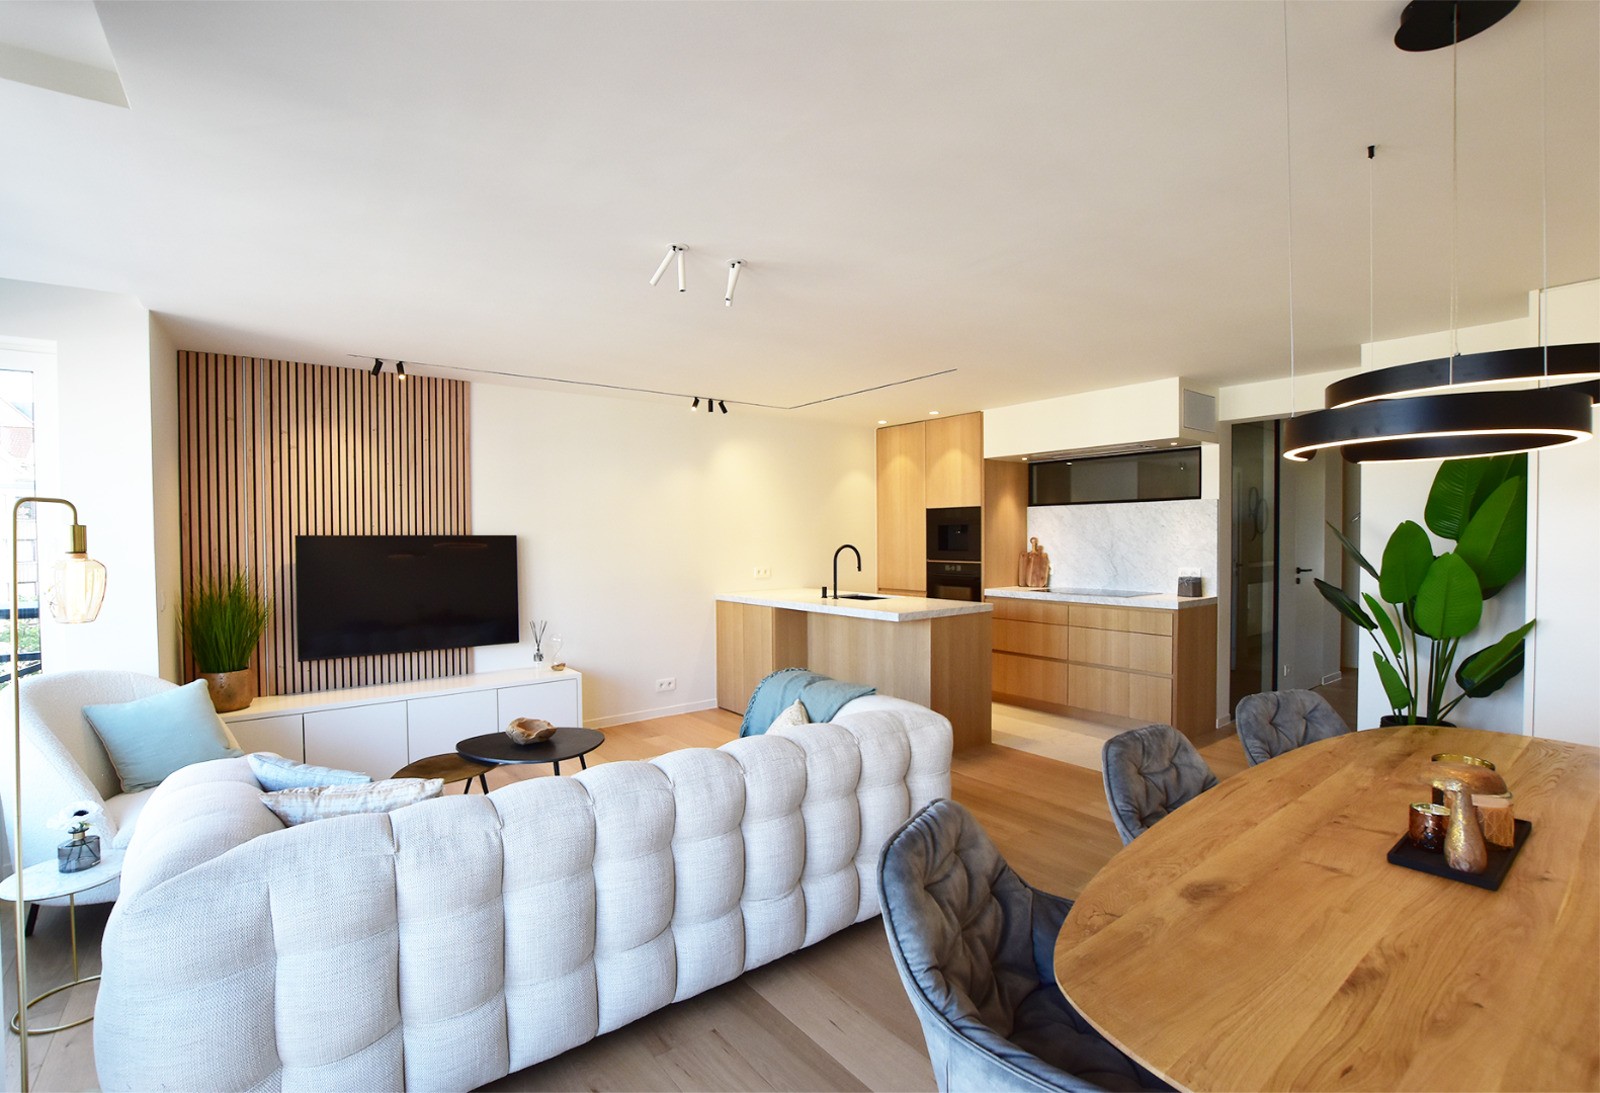 Volledig gerenoveerd 3 slk-appartement, centraal gelegen in de Lippenslaan te Knokke 1